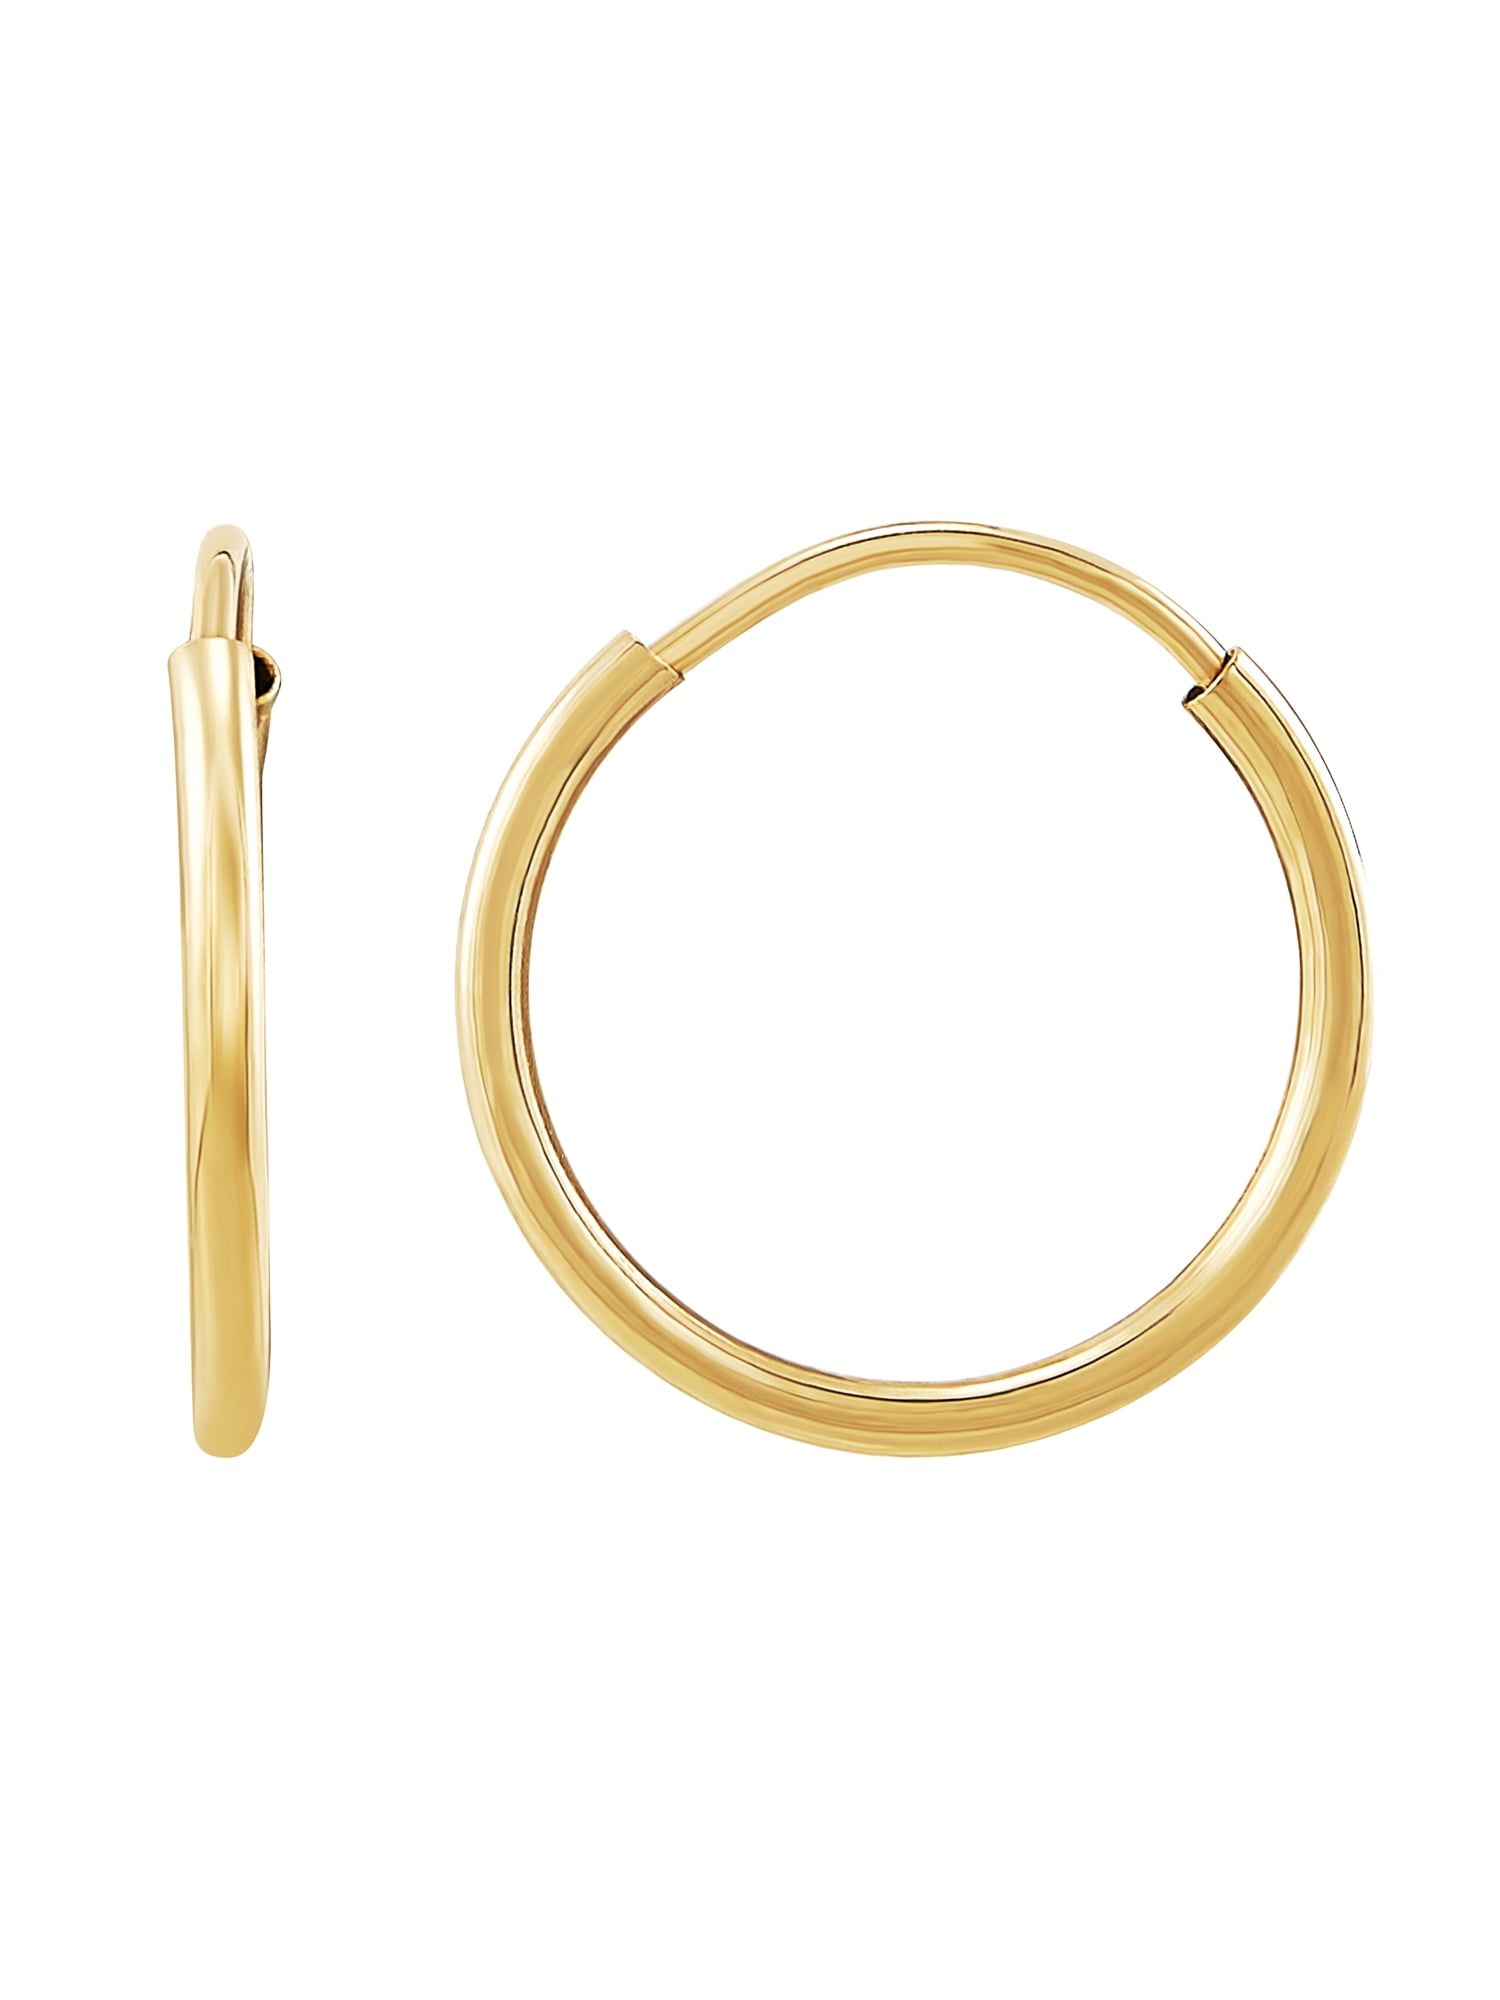 2.6 Grams A PAIR OF Fine 9 Ct Gold Spiral Hoop Earrings